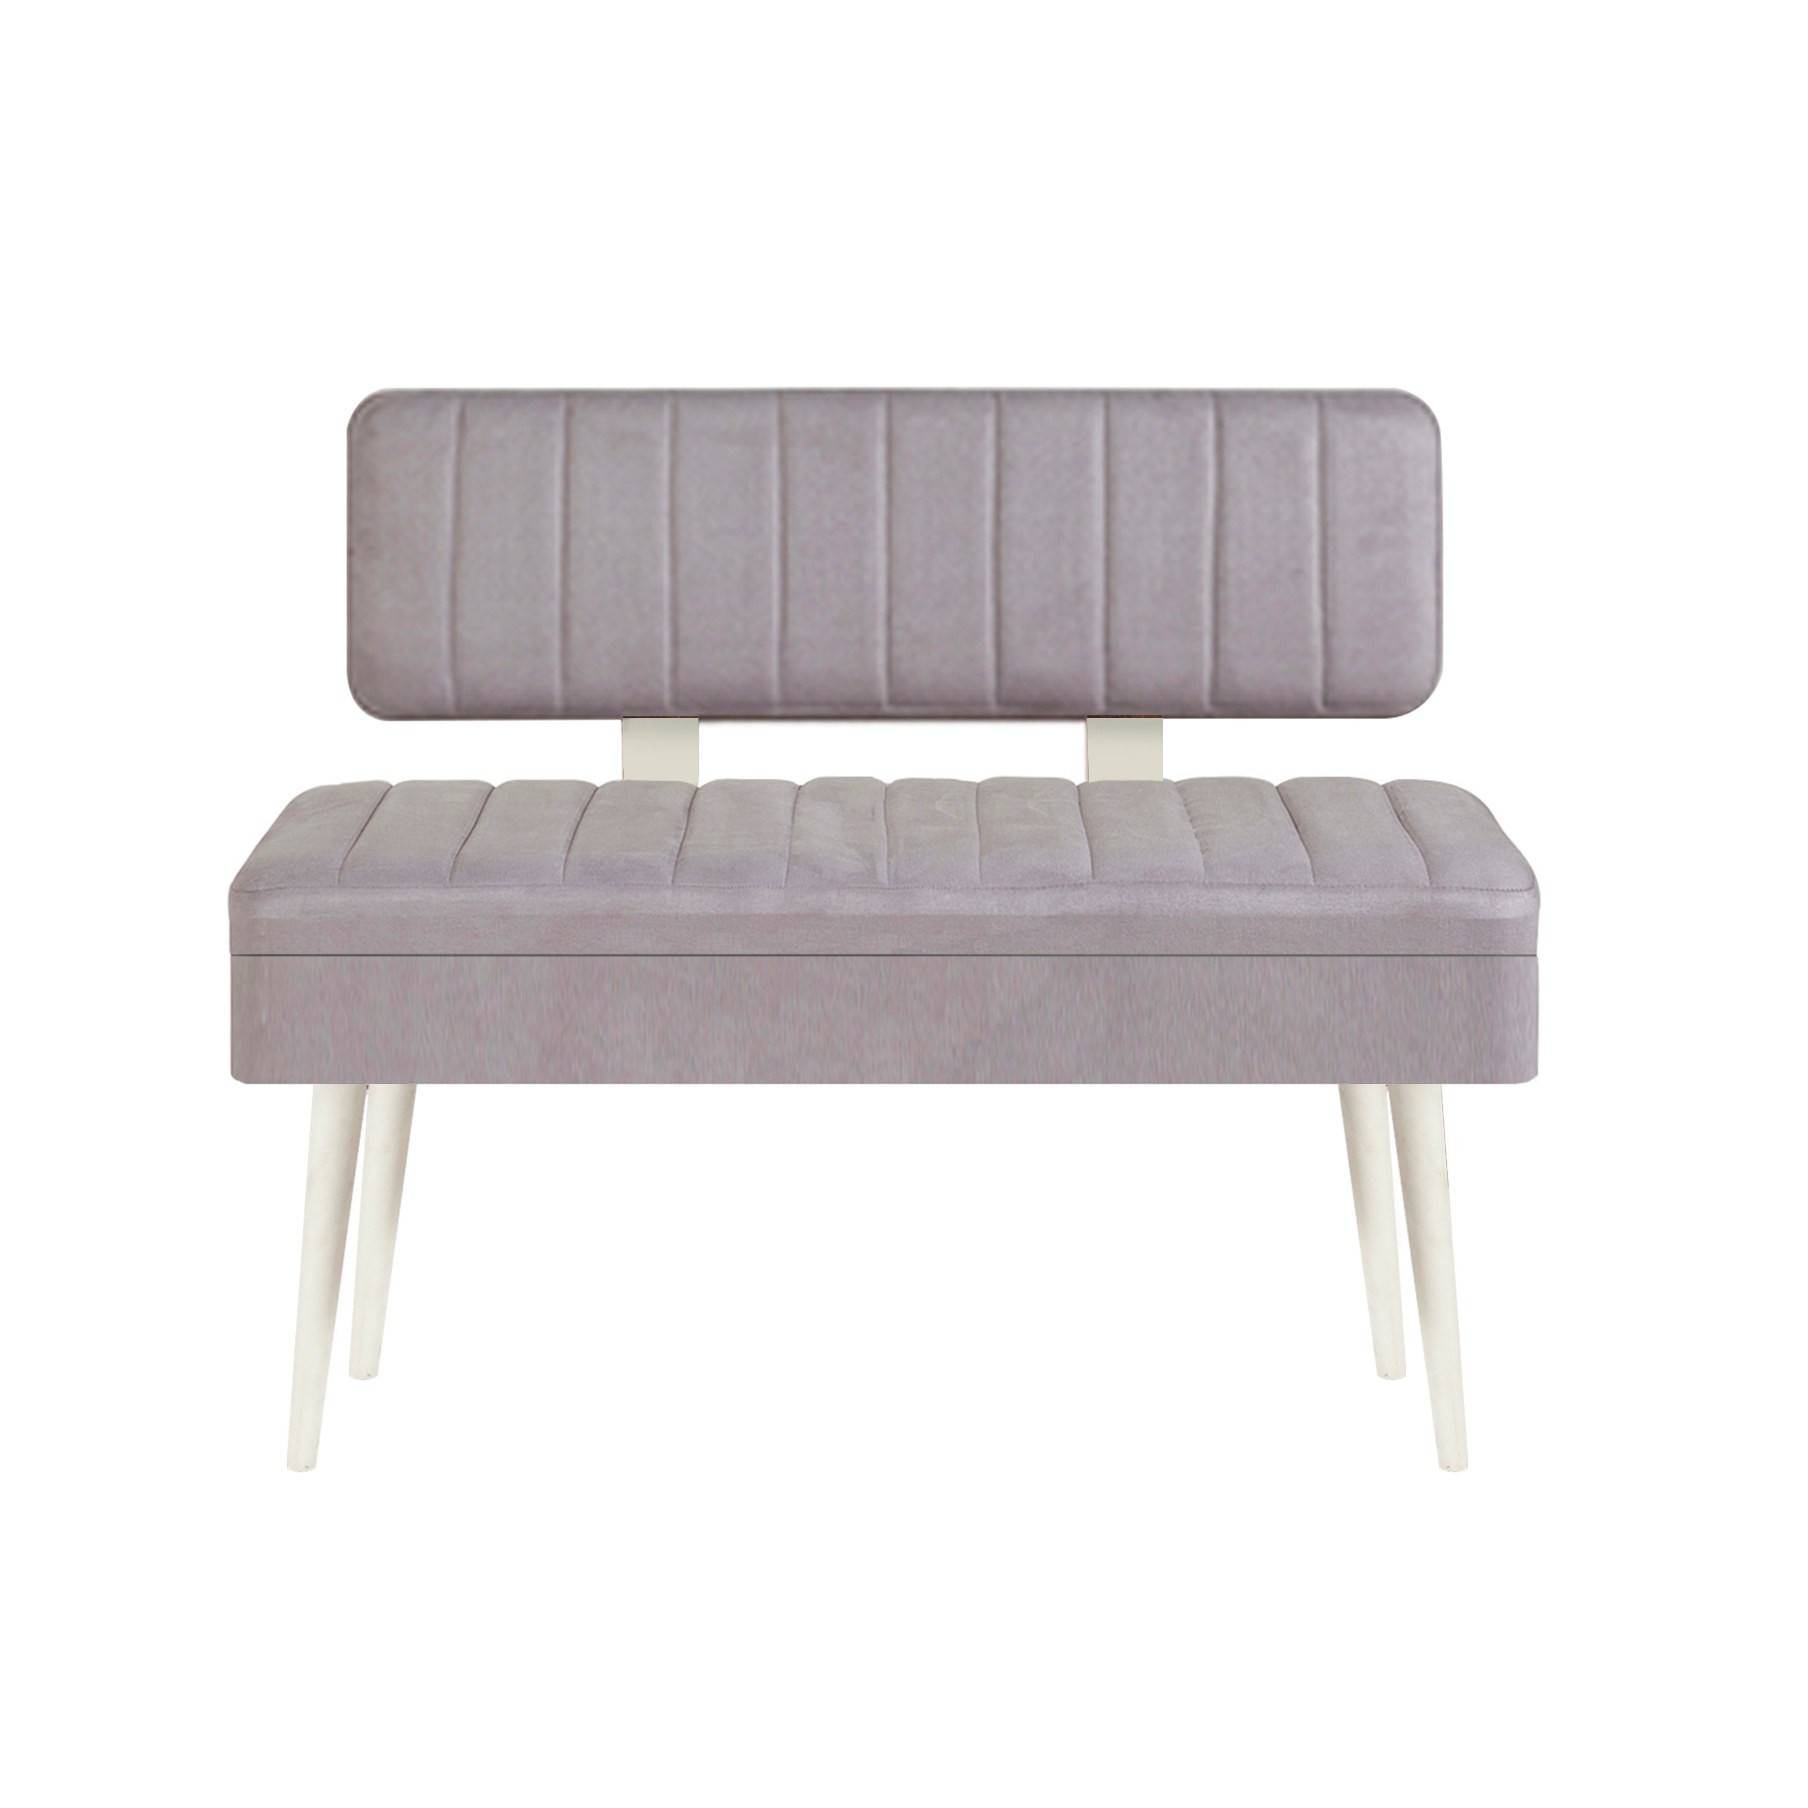 Molva asiento banco tapizado con respaldo L105cm Madera Blanco y Tela Gris